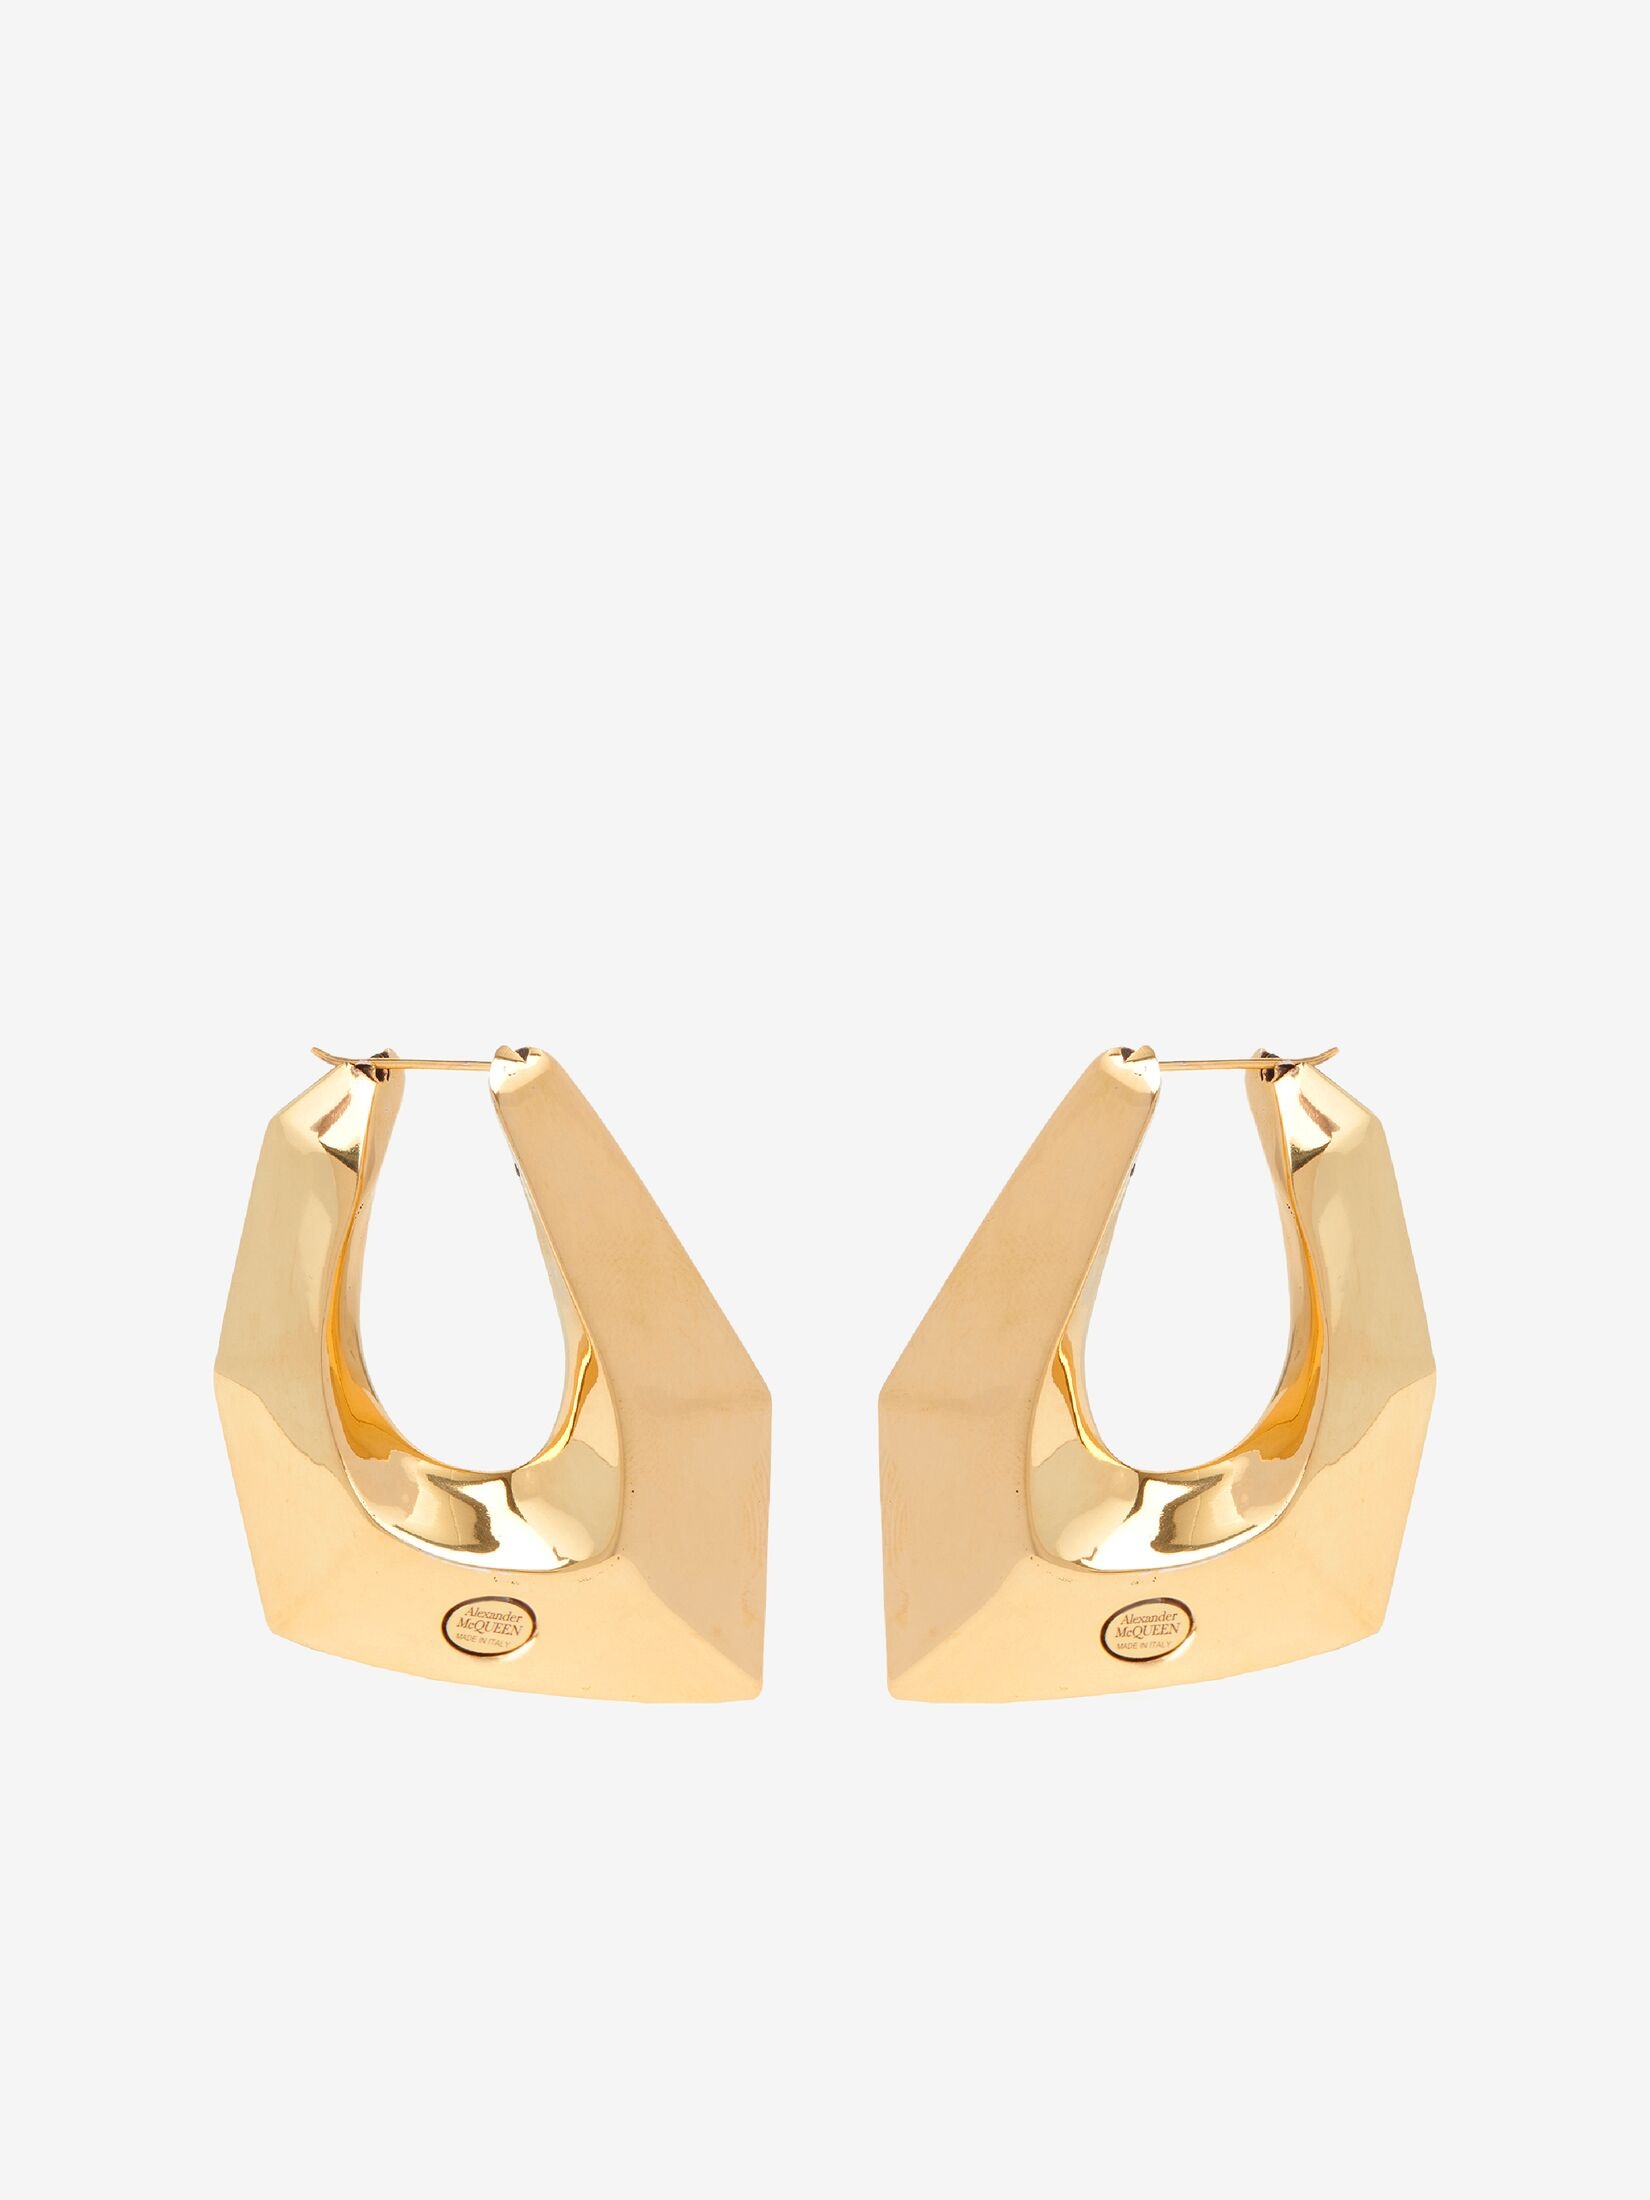 Women's Modernist Earrings in Antique Gold - 1